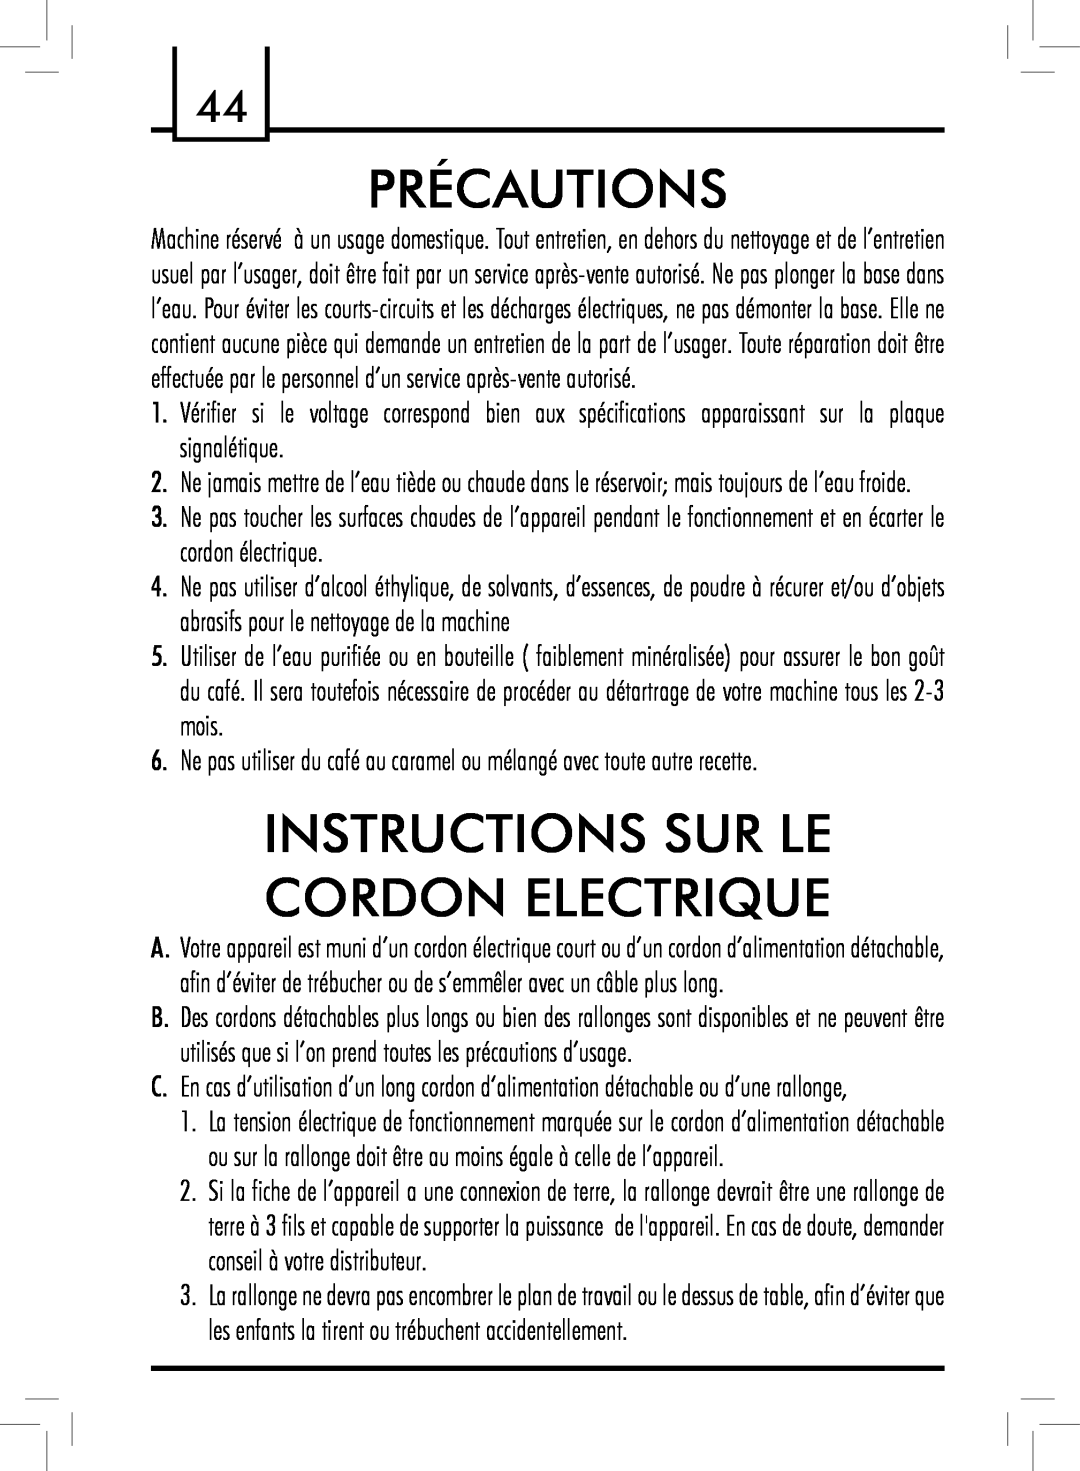 Saeco Coffee Makers PLUS manual Précautions, Instructions Sur Le Cordon Electrique 